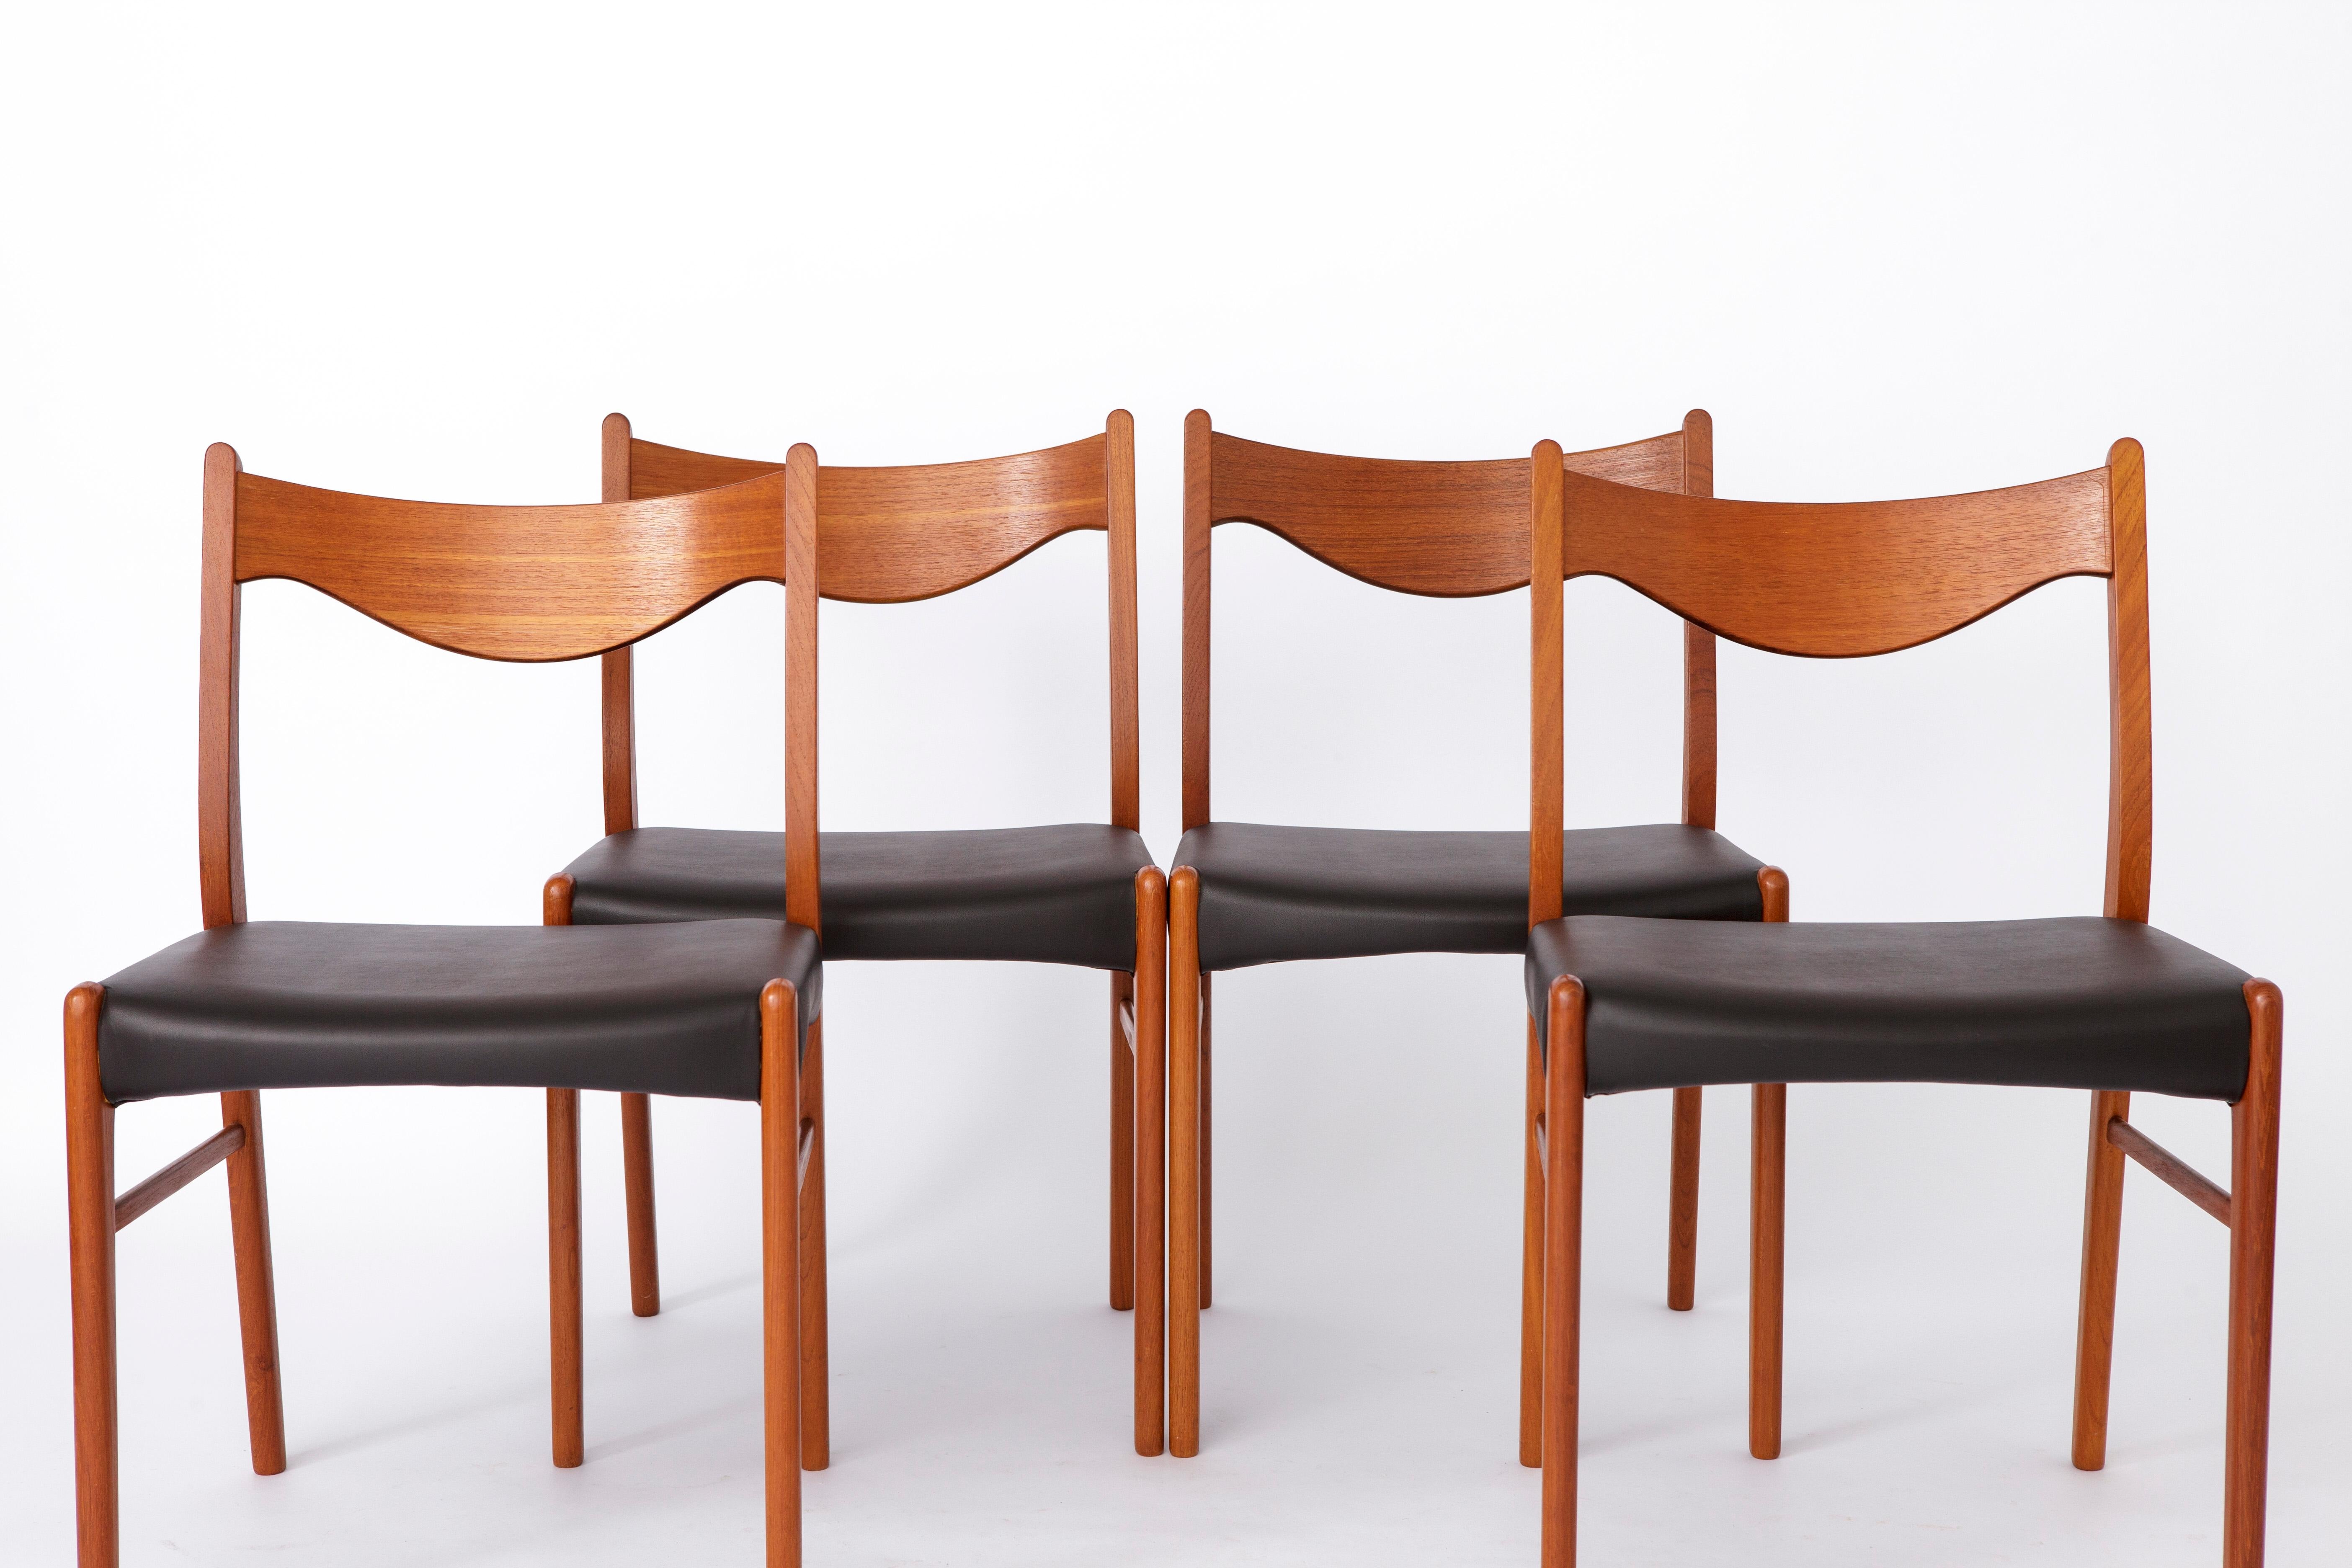 Ensemble de 4 chaises conçues par Arne Wahl Iversen pour le fabricant Glyngøre stolefabrik dans les années 1960. 
Modèle : GS61 des années 1960. 
Le prix affiché est celui d'un ensemble de 4 chaises. 

Toutes les chaises sont en très bon état après